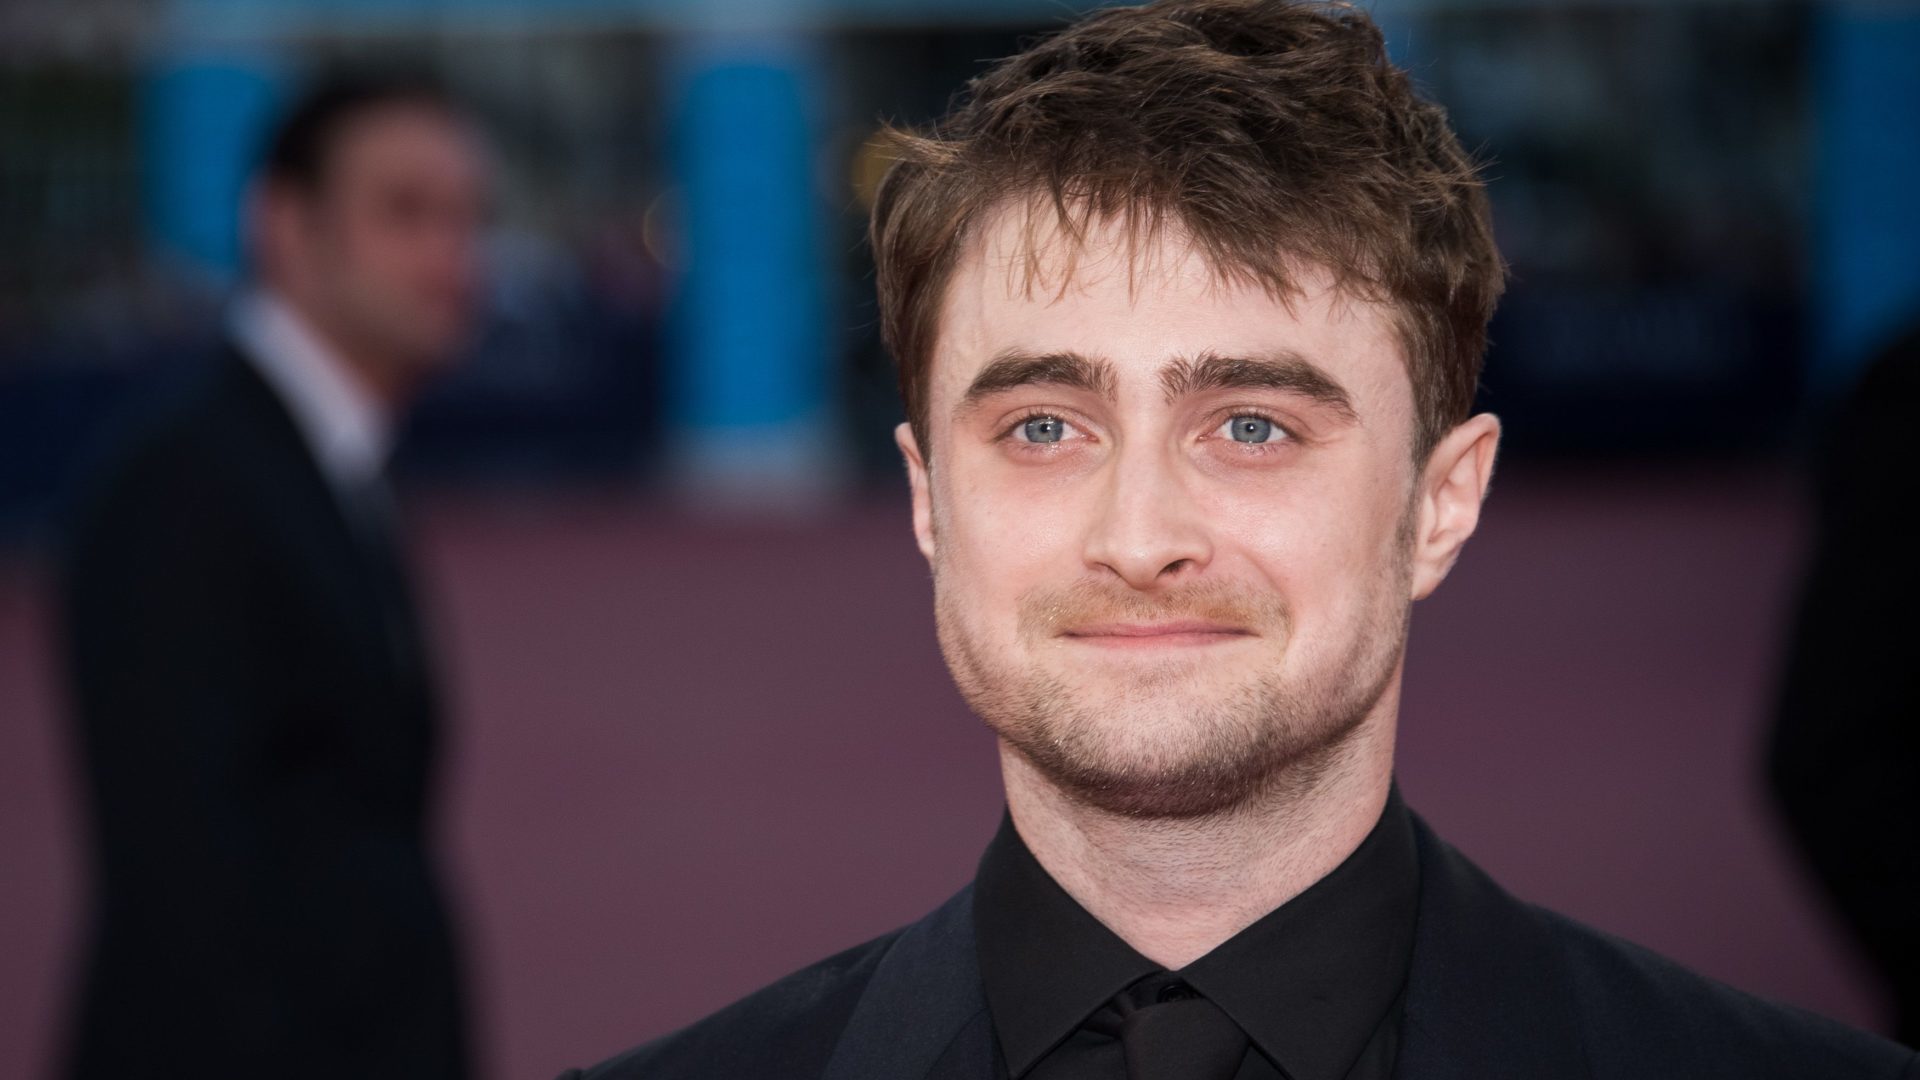 Veja o que aconteceu com Daniel Radcliffe após o fim de Harry Potter